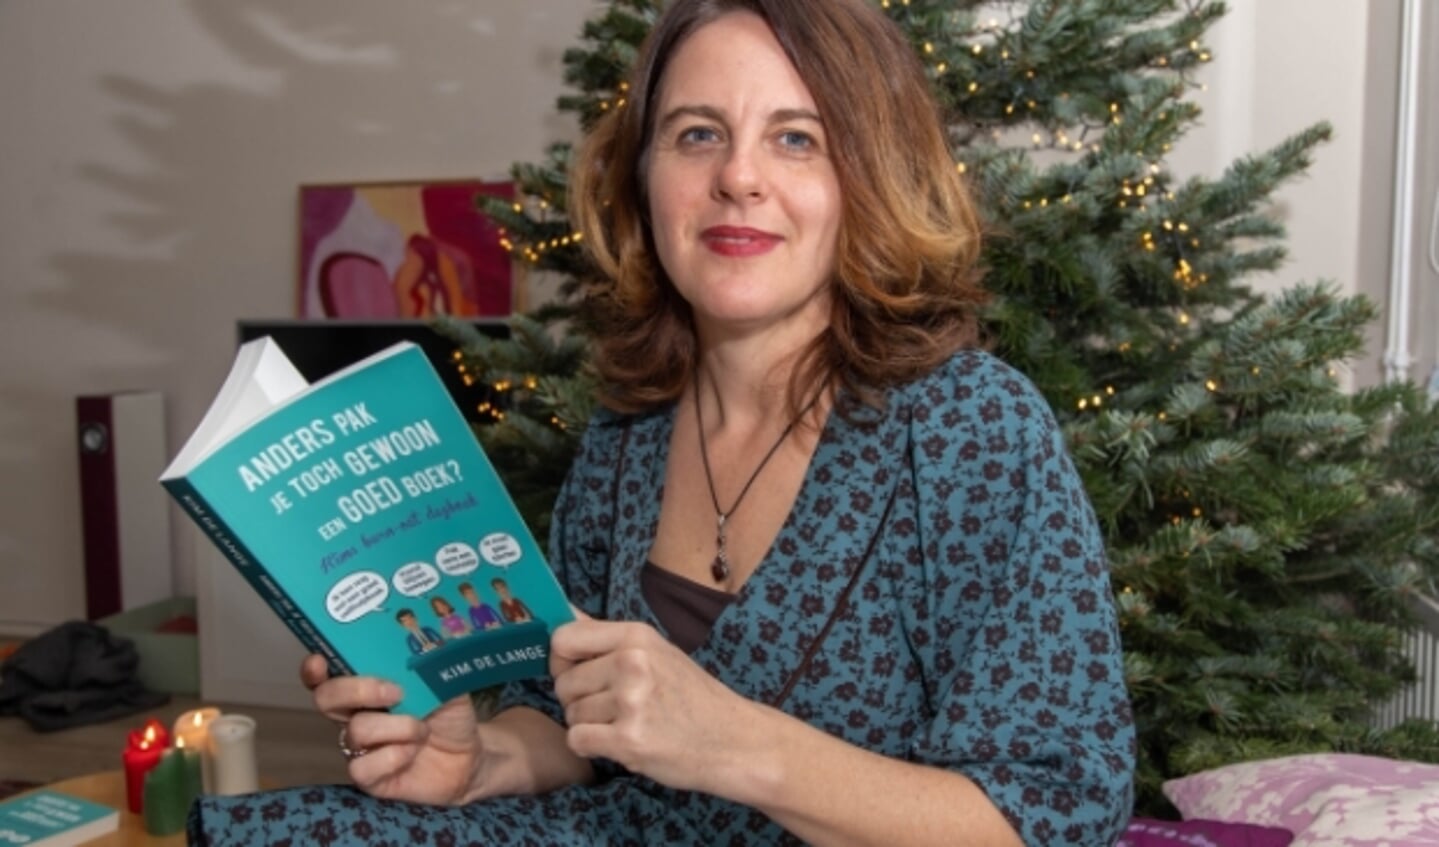  Kim de Lange probeert het kerstgevoel naar de mensen thuis te brengen door verhalen voor te lezen. (Foto: Frans Paalman) 